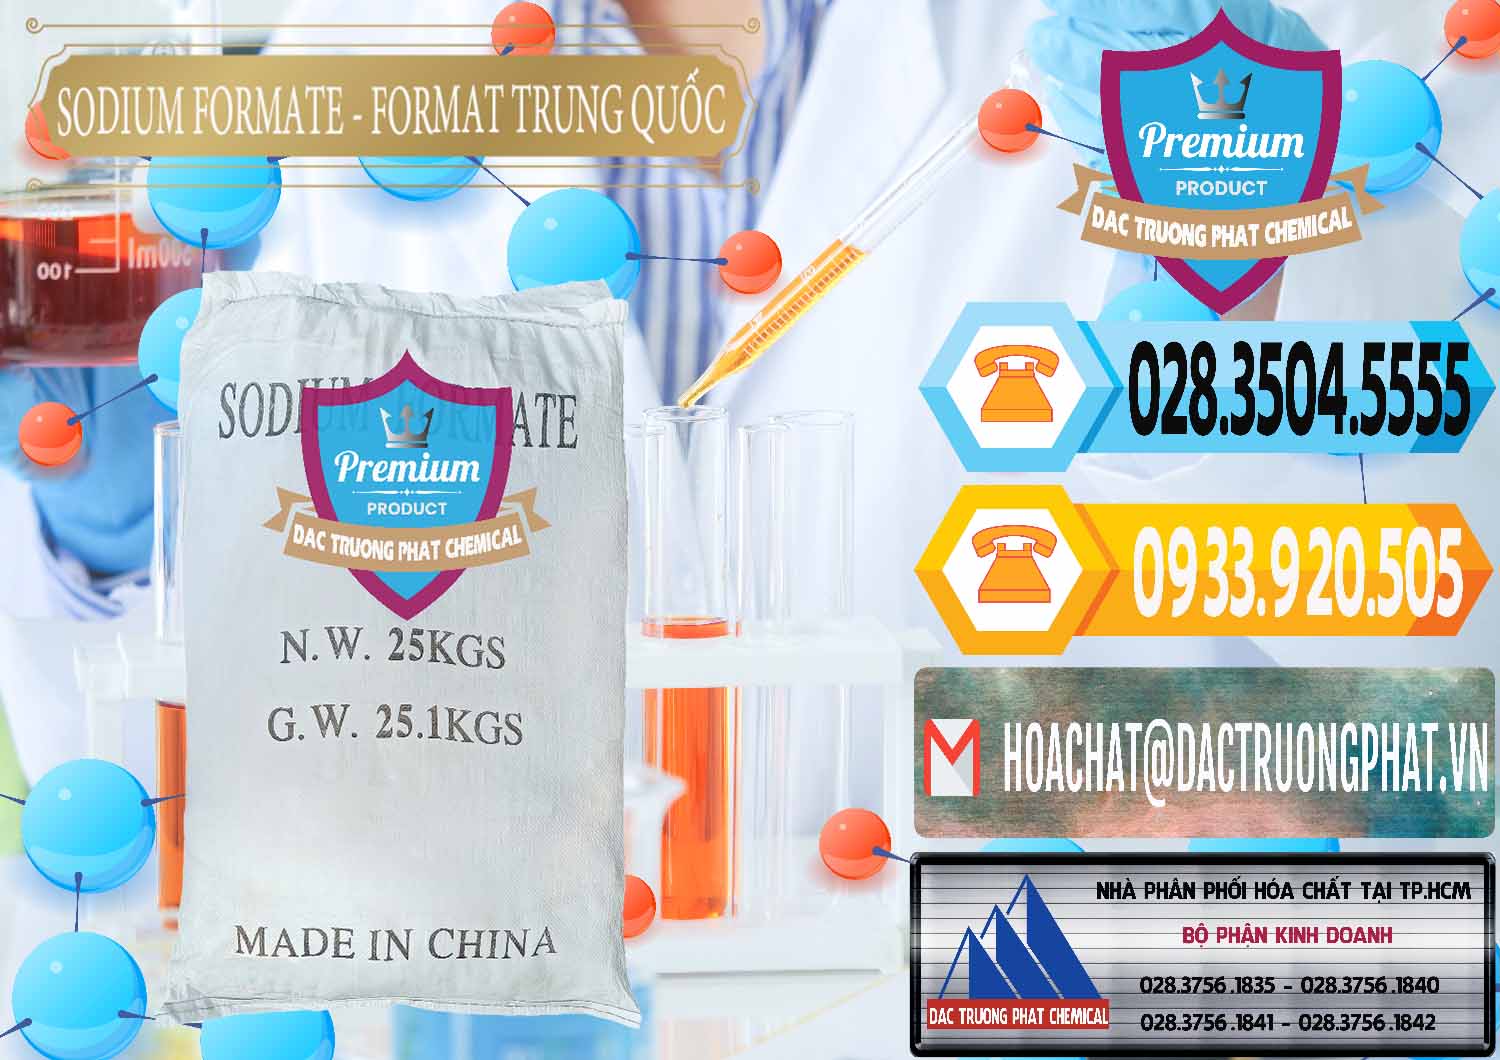 Công ty chuyên bán ( cung cấp ) Sodium Formate - Natri Format Trung Quốc China - 0142 - Cty cung cấp - kinh doanh hóa chất tại TP.HCM - hoachattayrua.net